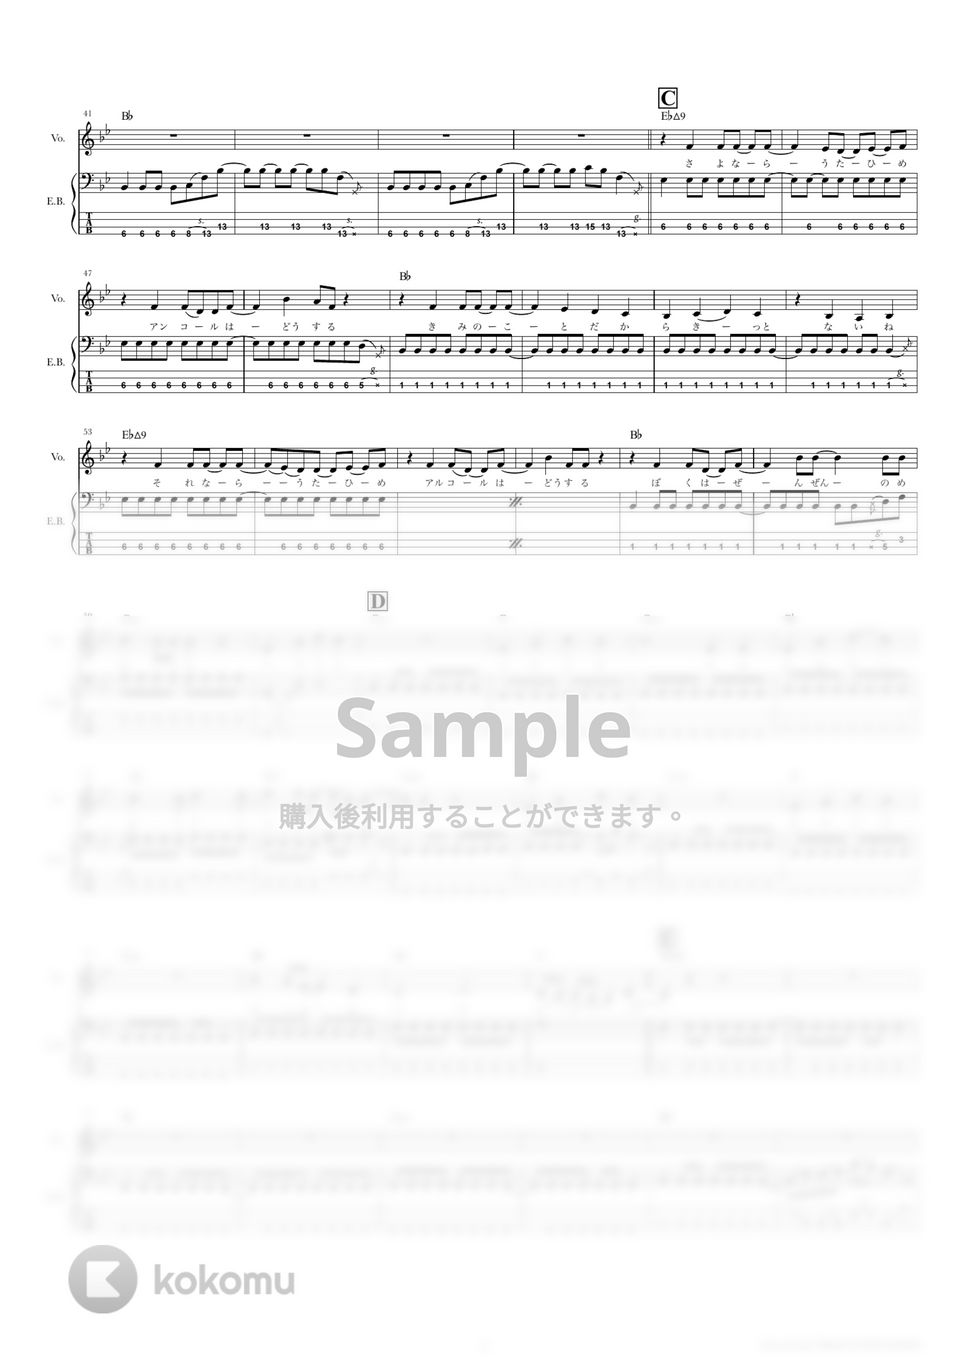 クリープハイプ - おやすみ泣き声、さよなら歌姫 (ベーススコア・歌詞・コード付き) by TRIAD GUITAR SCHOOL